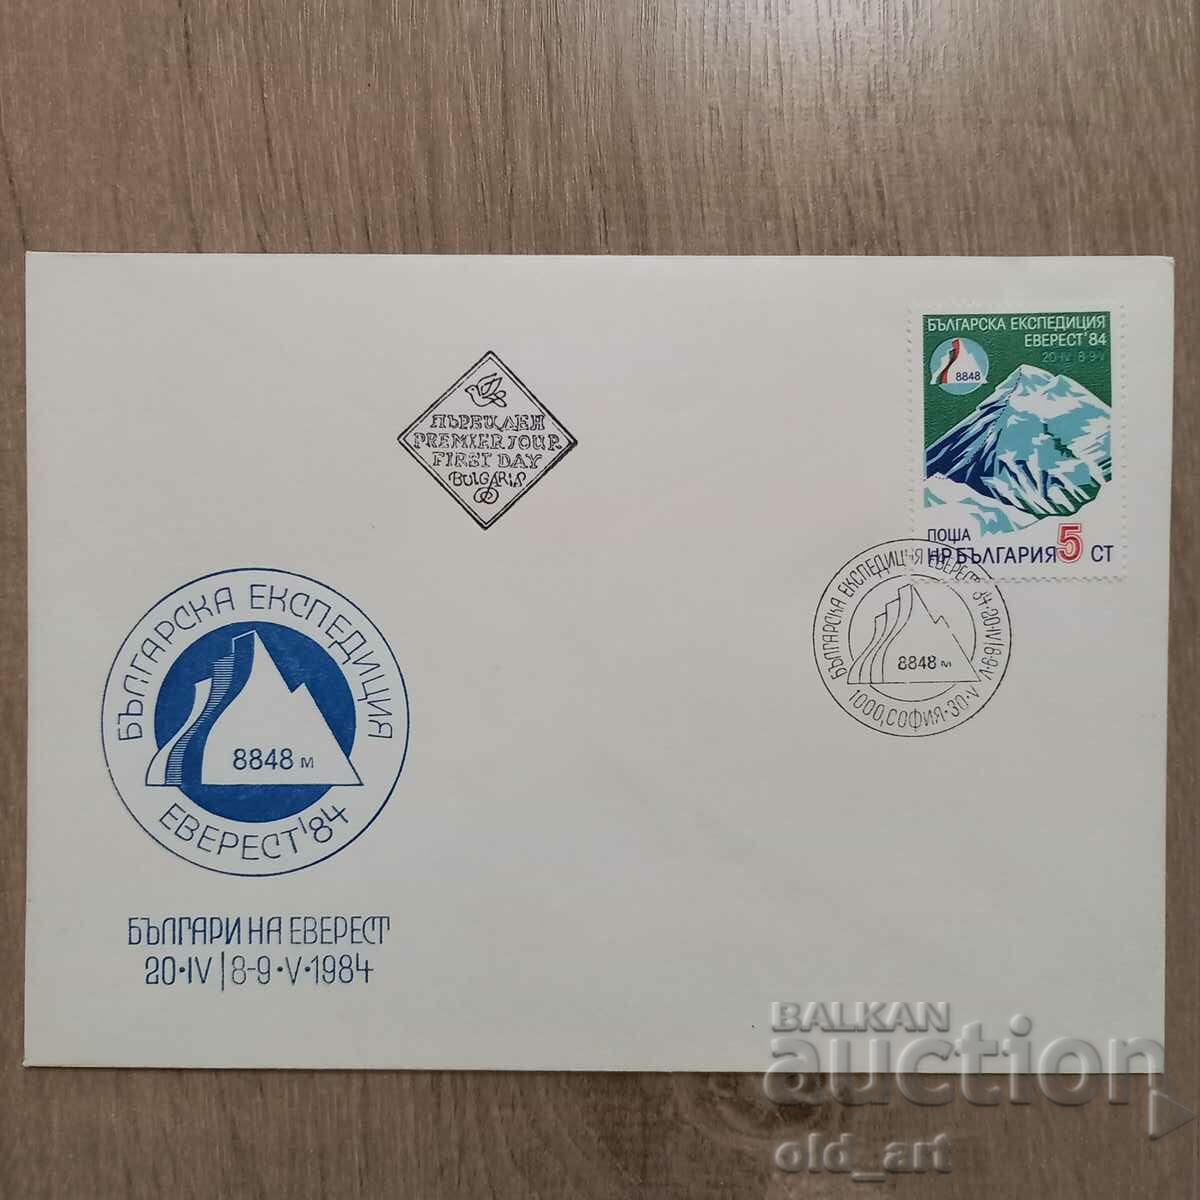 Ταχυδρομικός φάκελος - Bulgarian Expedition Everest 84